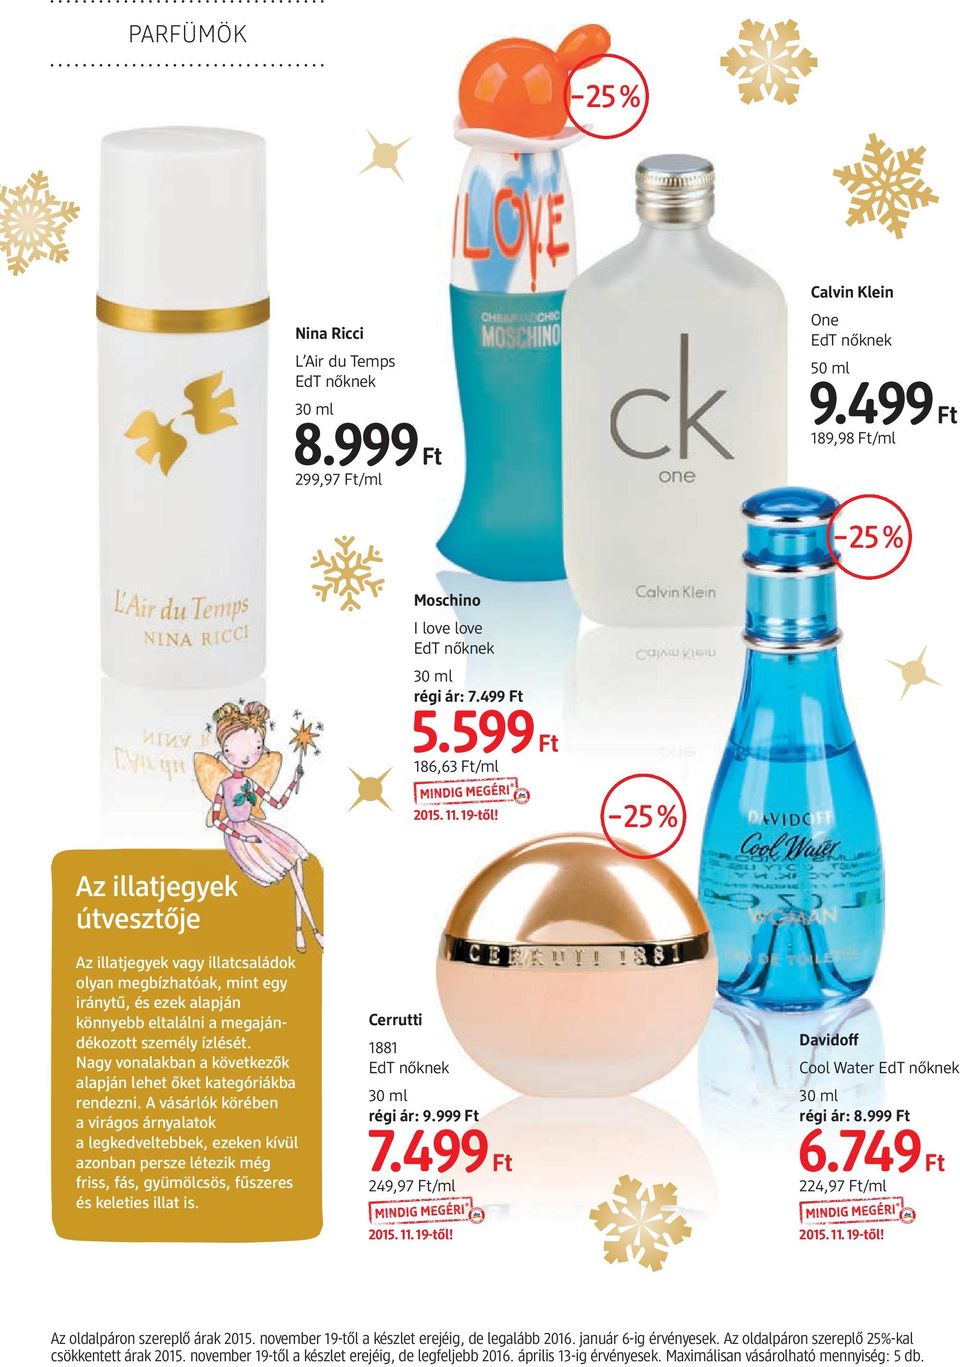 parfum.dm.hu Segítünk a parfüm választásban!... 25% Natúrkozmetikai  termékek kedvezményesen... - PDF Ingyenes letöltés